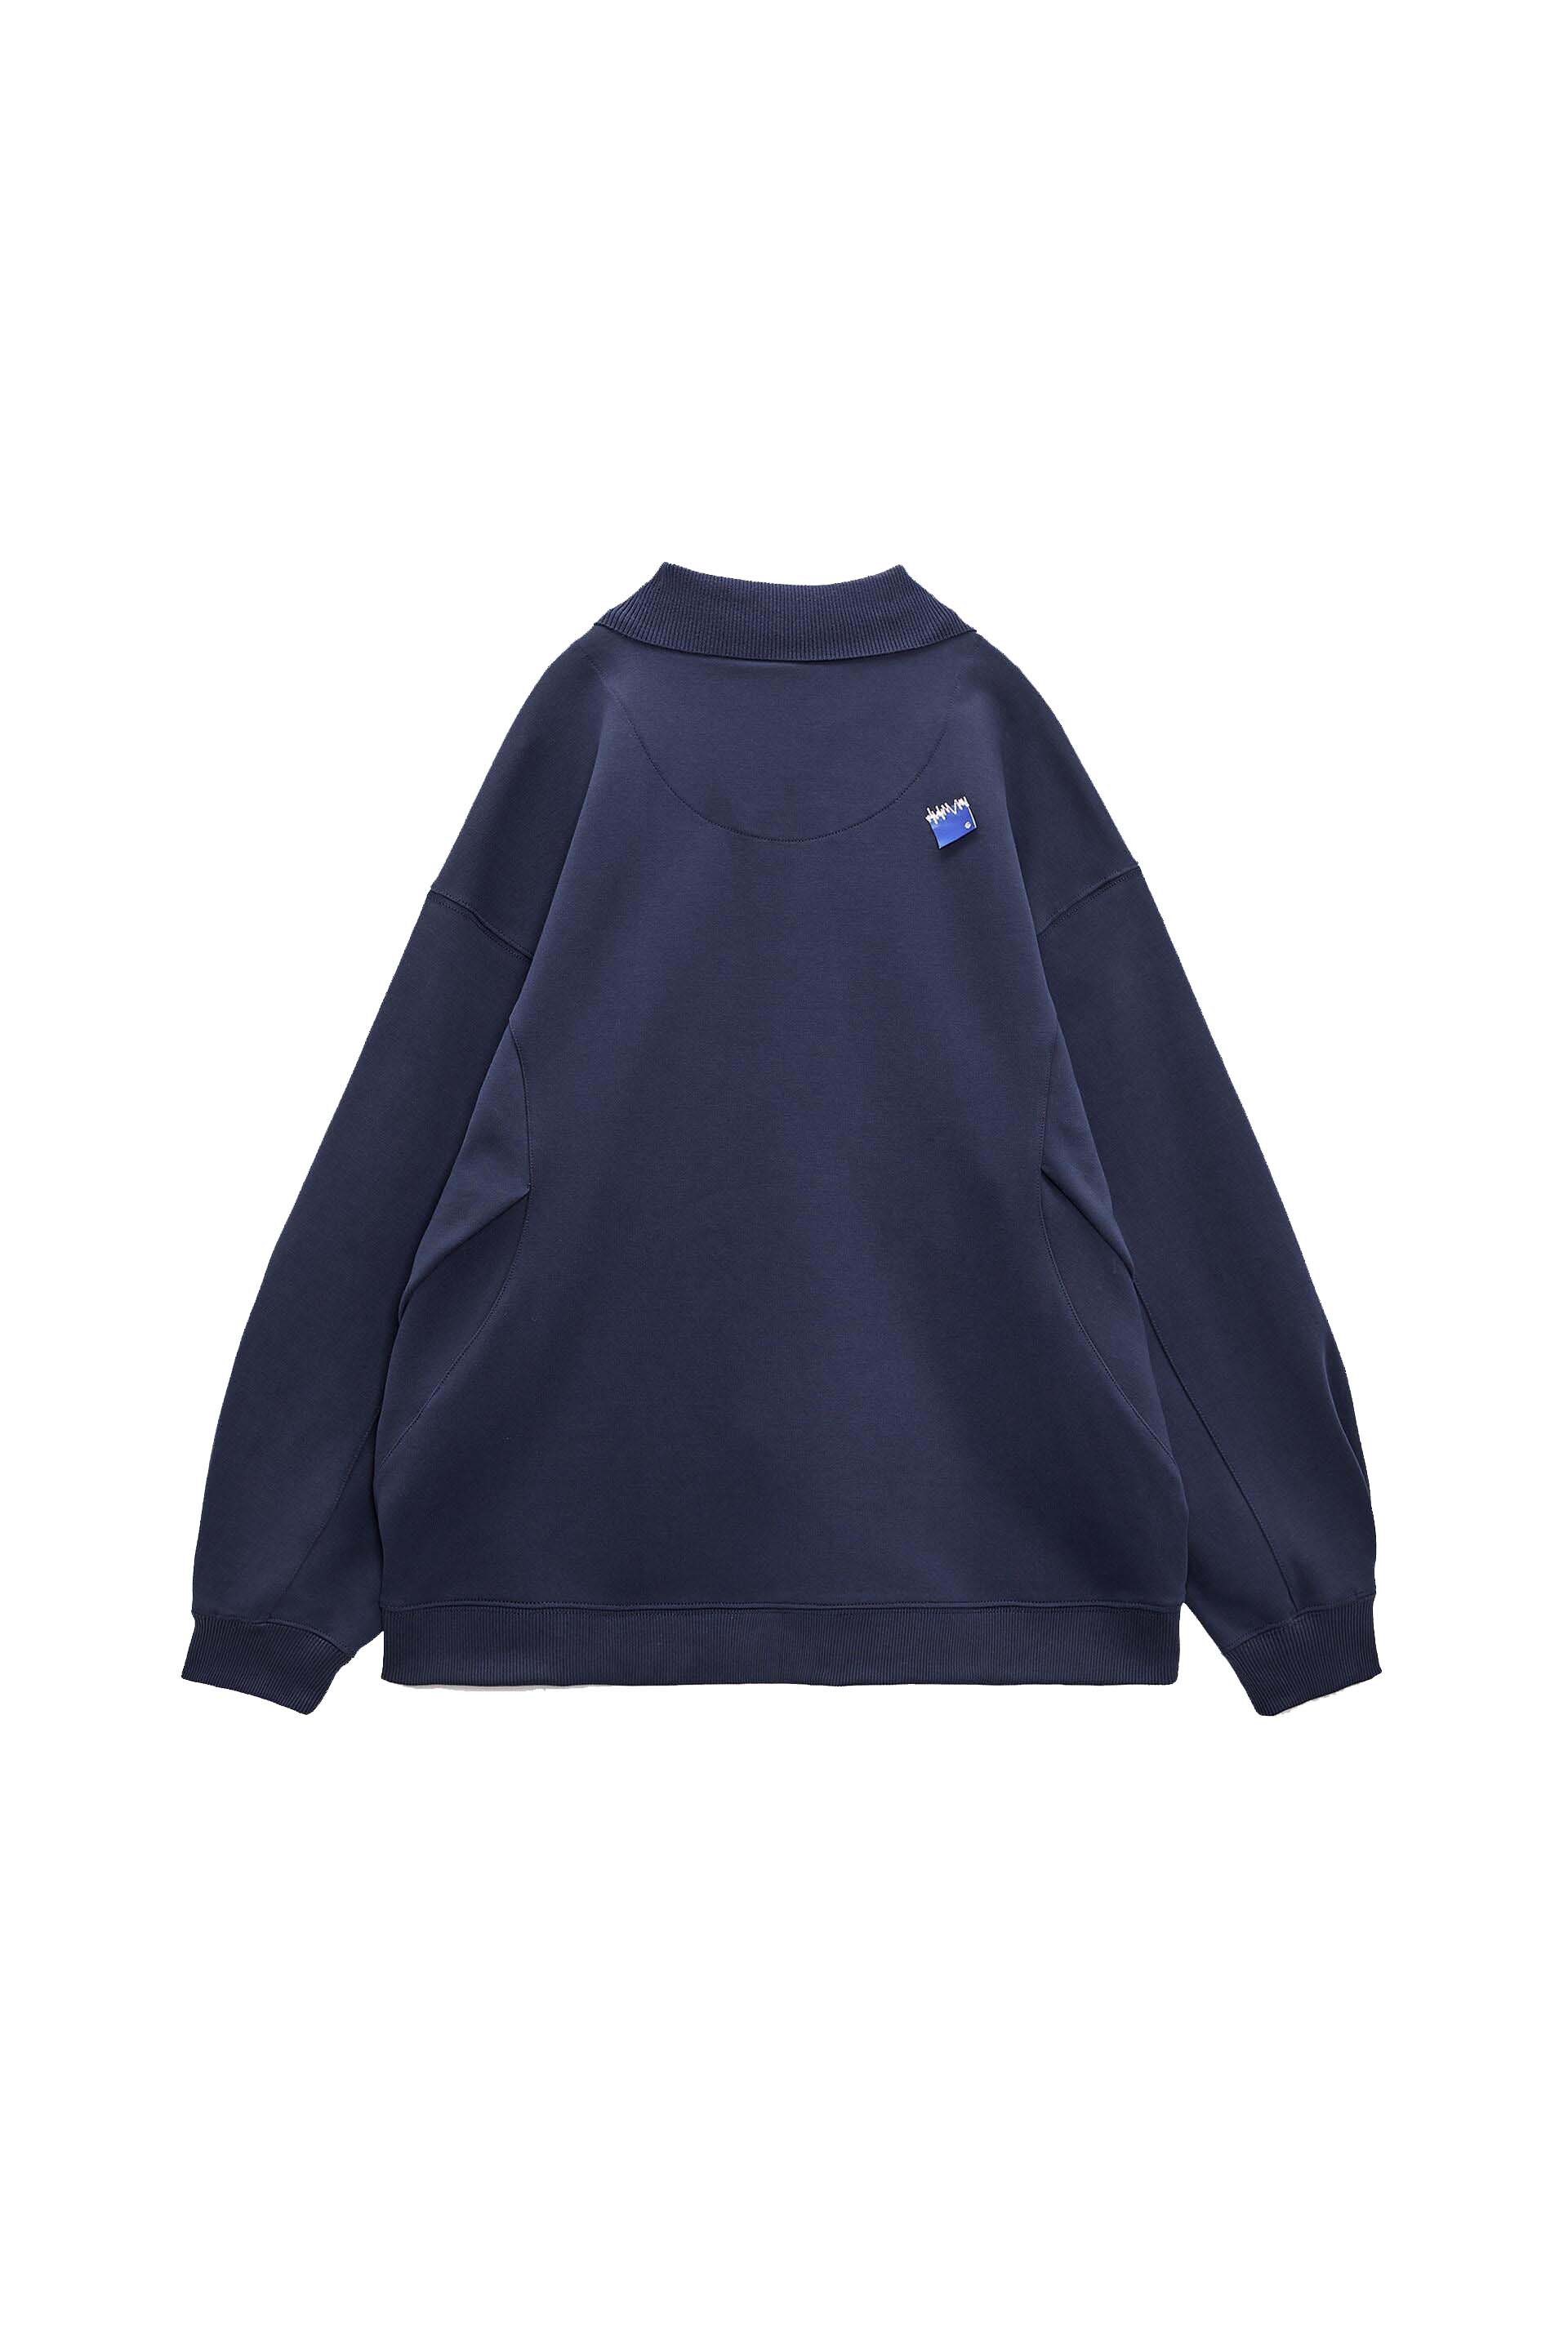 新色登場 アーダーエラー x X Sleeve T-Shir.t☆ ADER Navy ザラ☆ユニセックスPolo Blue Shirt Zara  トップス